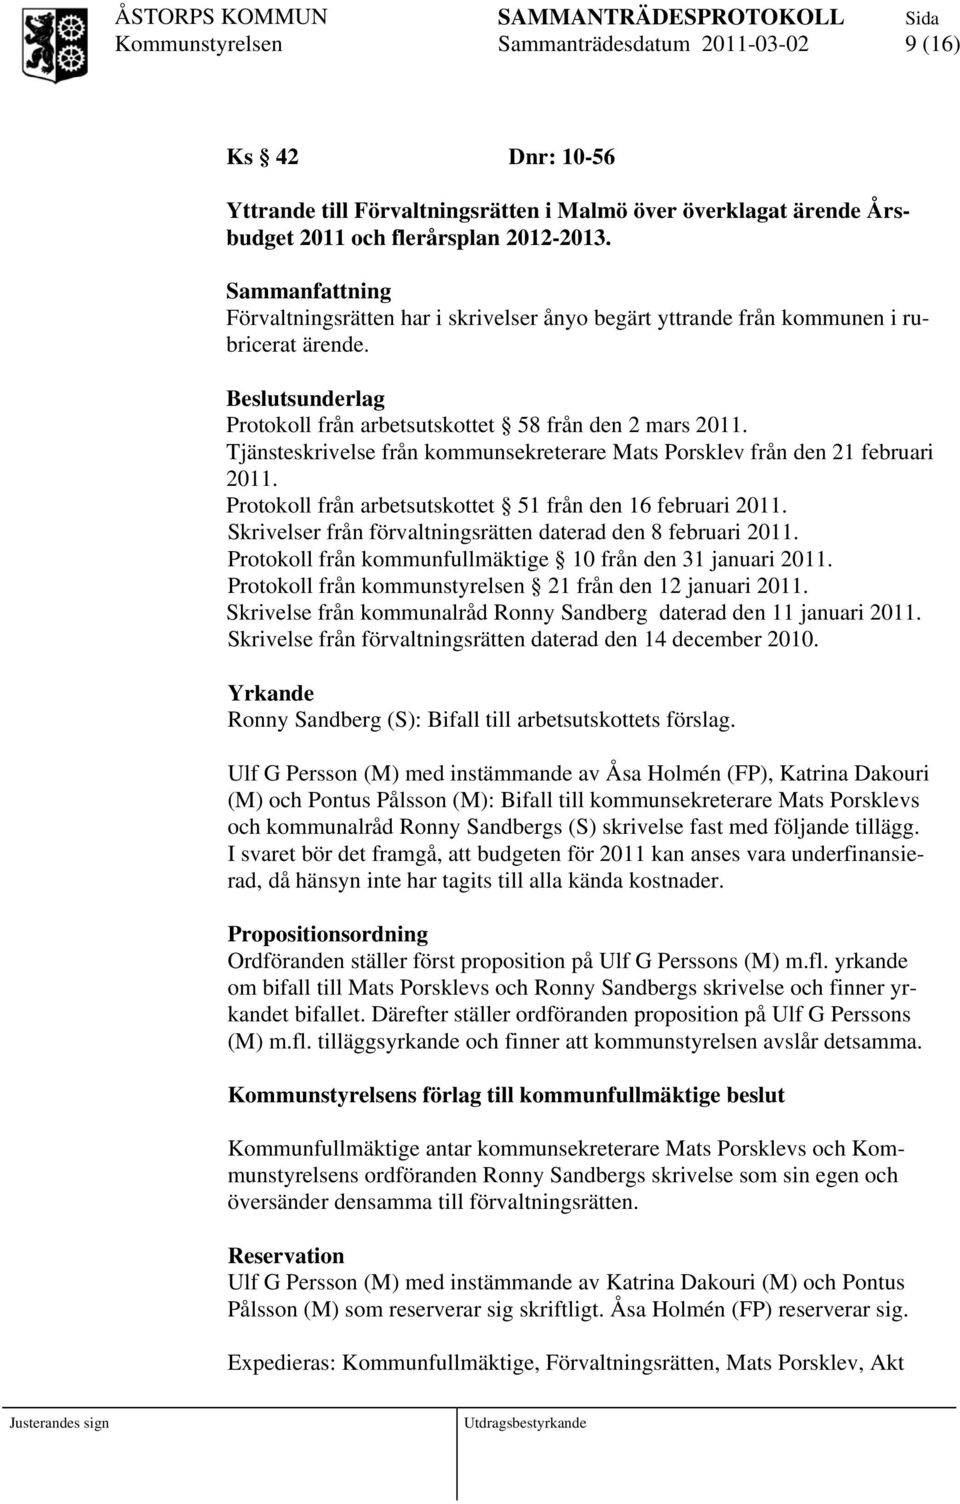 Tjänsteskrivelse från kommunsekreterare Mats Porsklev från den 21 februari 2011. Protokoll från arbetsutskottet 51 från den 16 februari 2011.